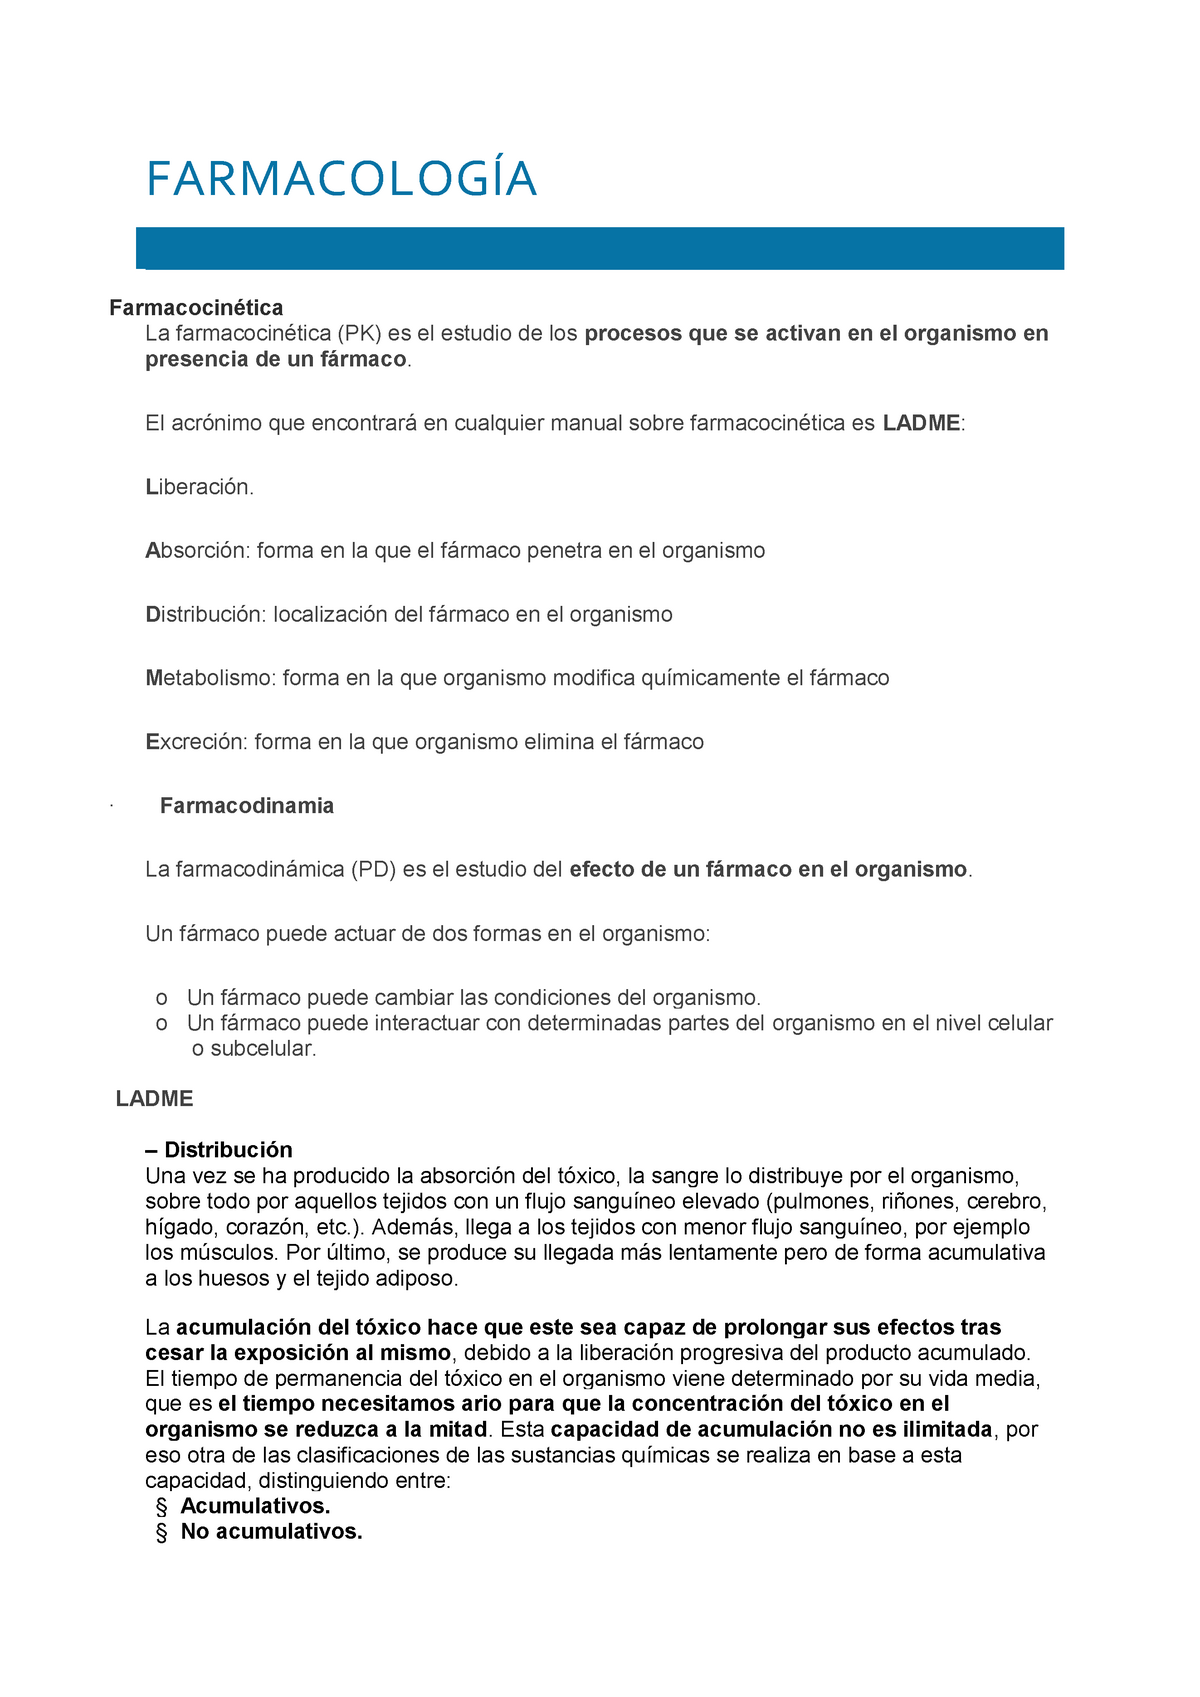 Farmacología - Apuntes 2 - FARMACOLOGÍA Farmacocinética La ...